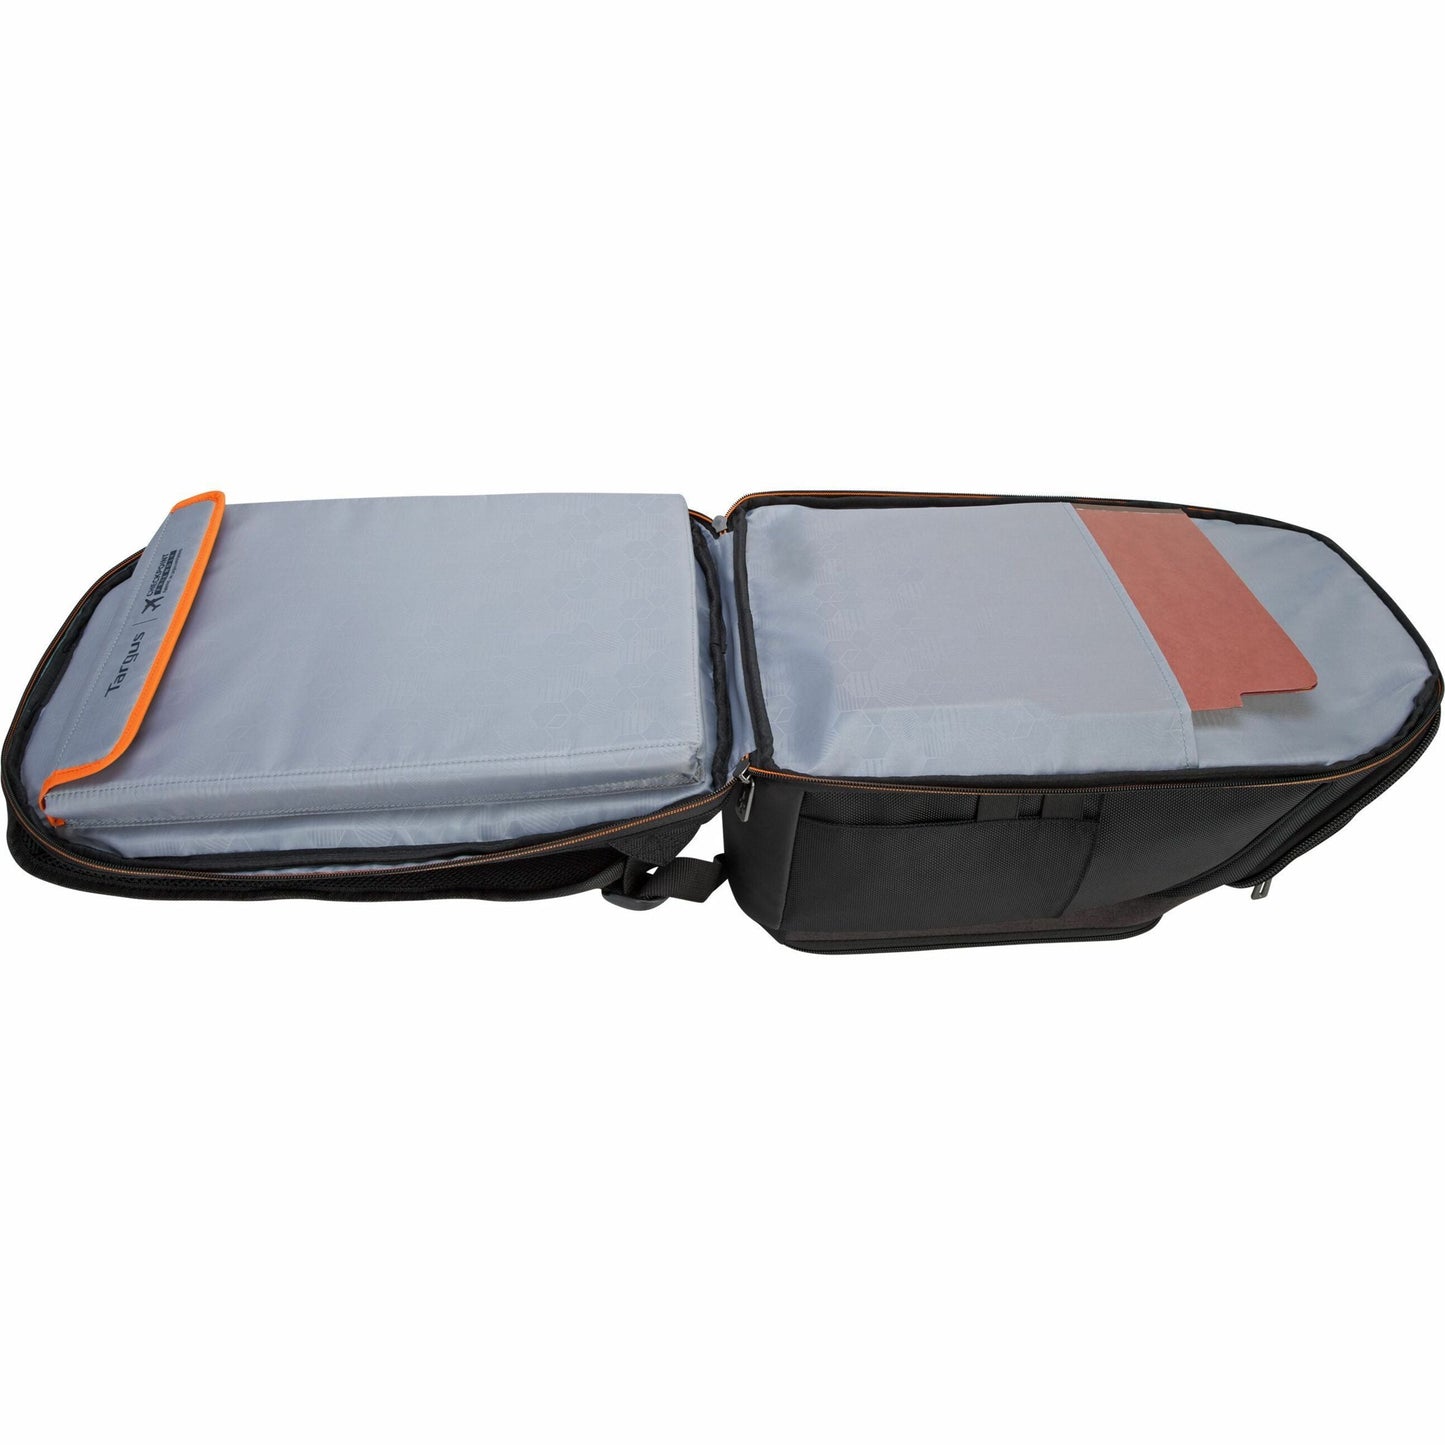 Targus CitySmart TSB895 Carrying Case (Backpack) for 16" Notebook - Gray